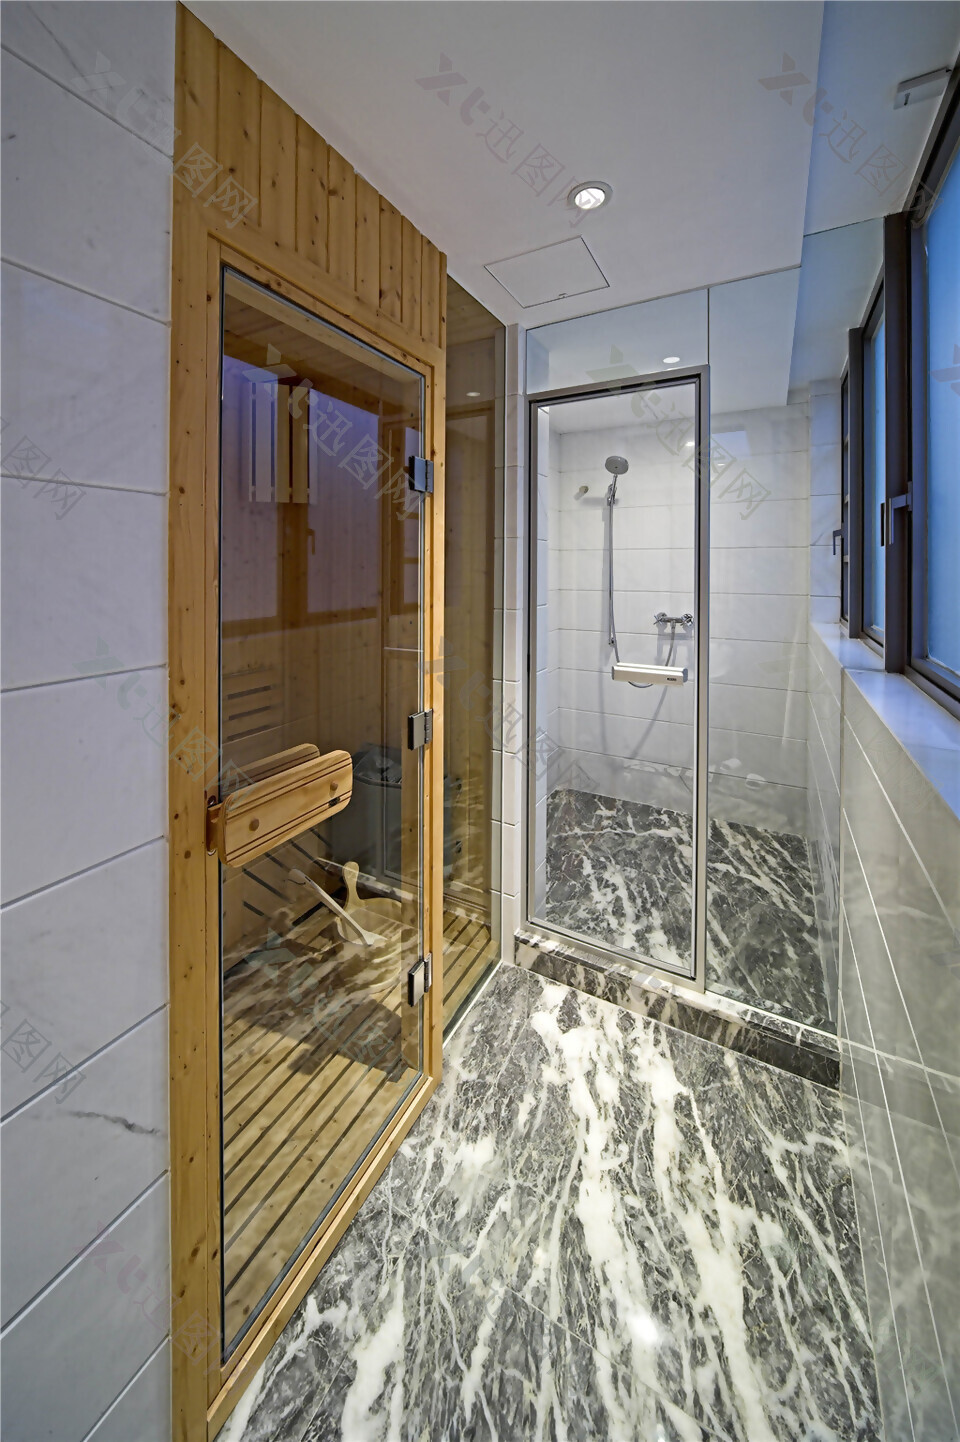 清新简约浴室大理石花纹地板室内装修效果图